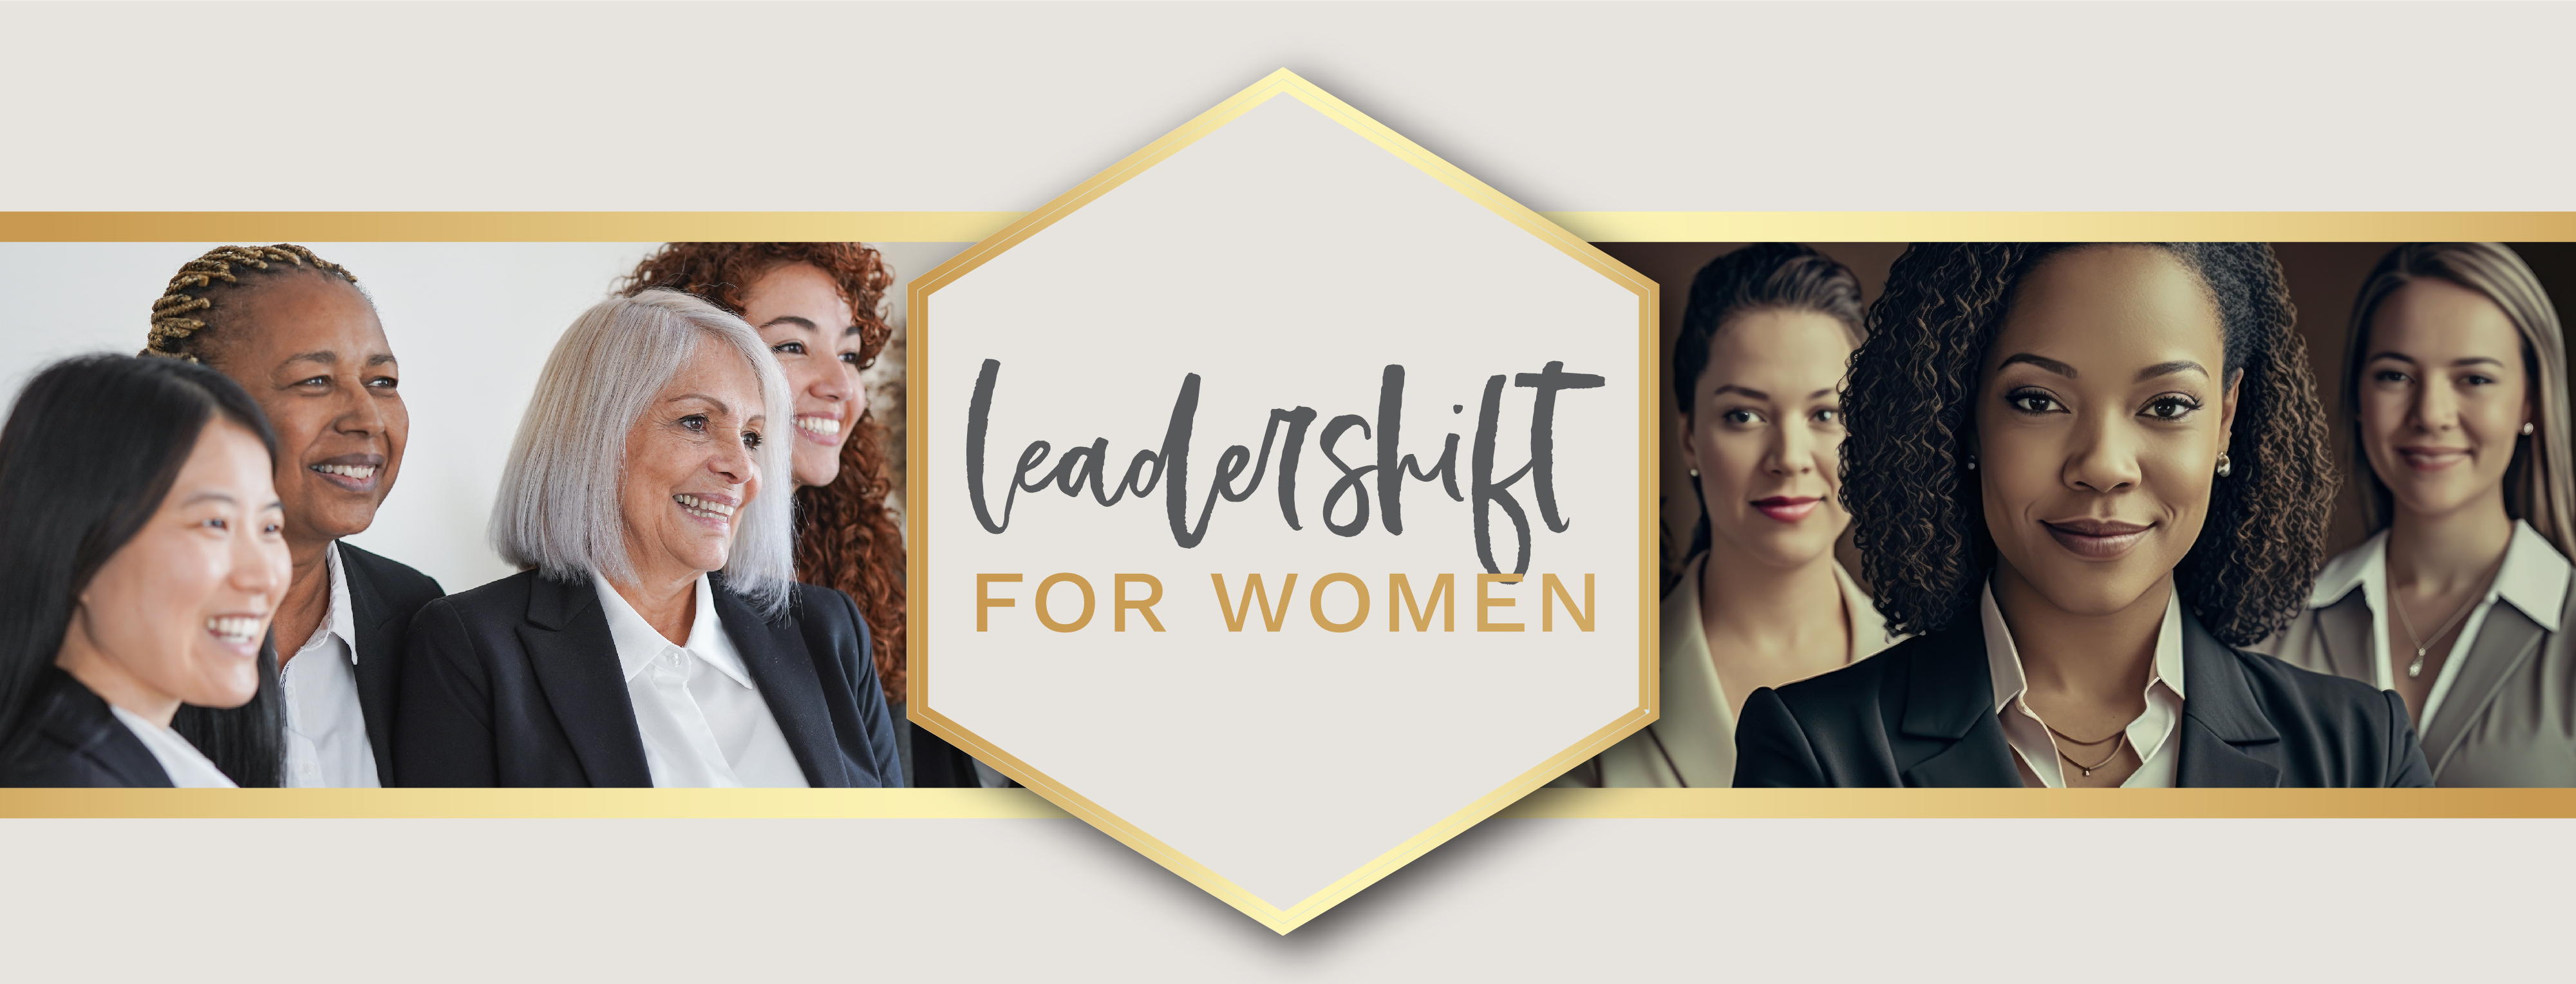 LEADERSHIFT FOR WOMEN-WEBSITE